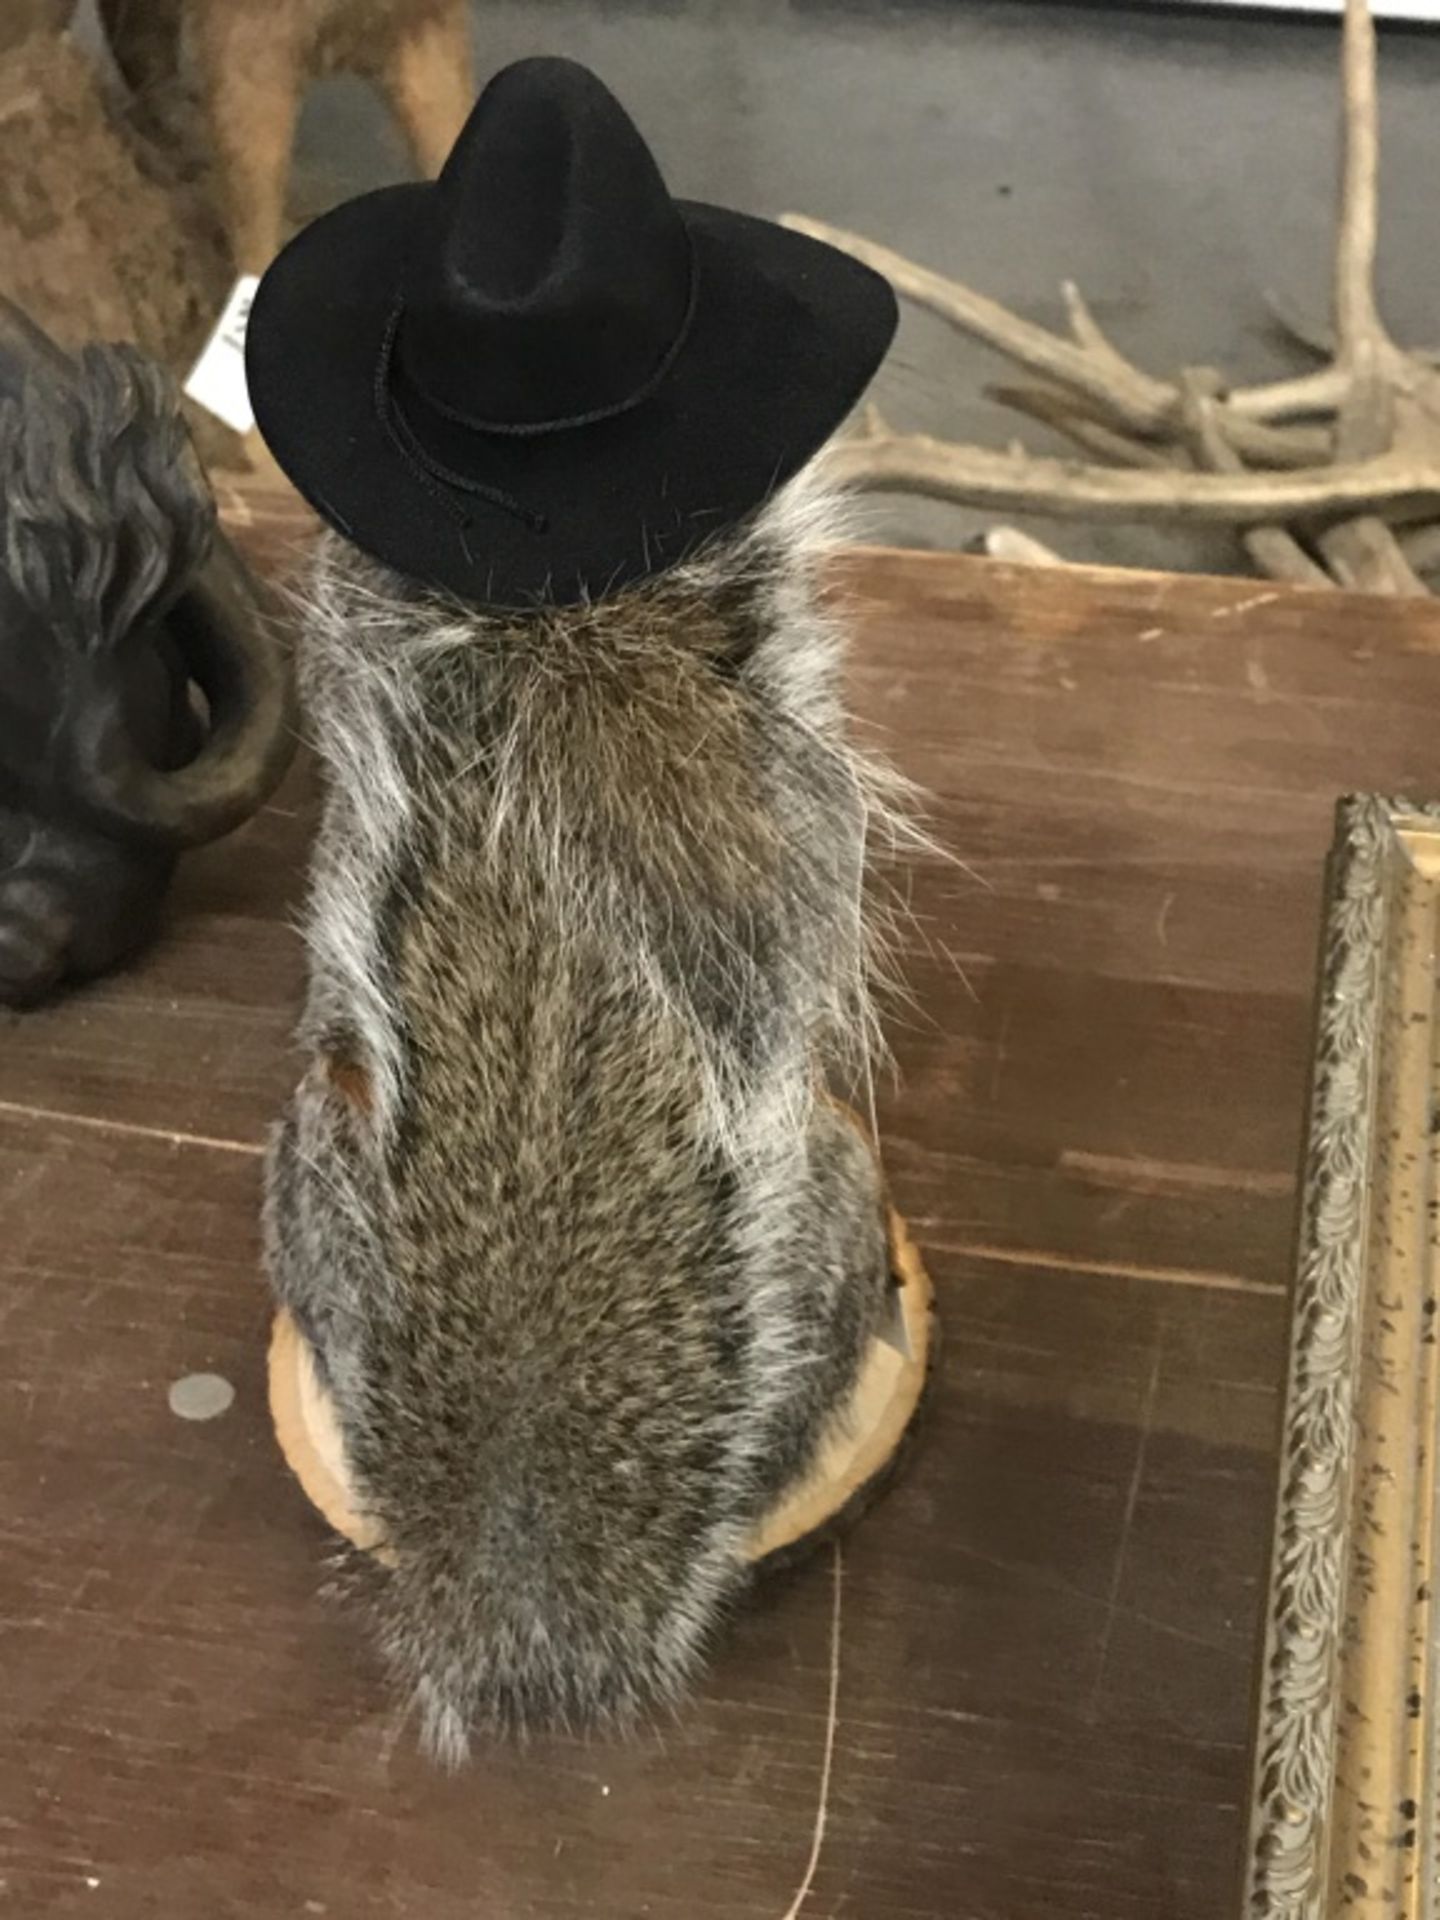 Cowboy Squirrel - Image 17 of 17